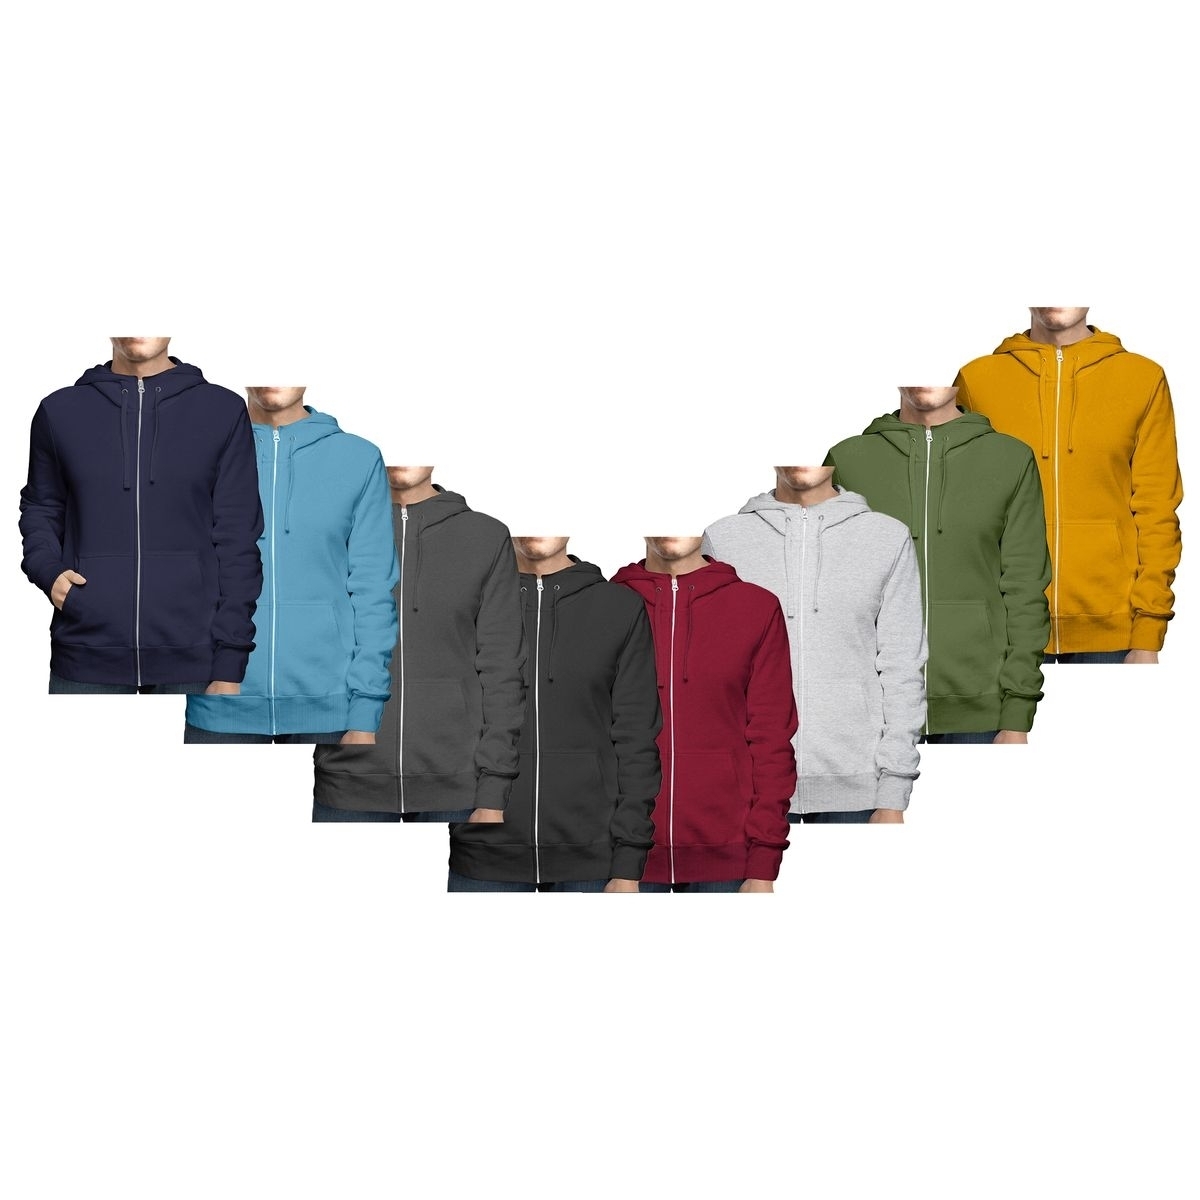 Men's Big & Tall Winter Warm Soft Cozy Full Zip-Up Fleece Lined Hoodie Sweatshirt - Navy, Medium